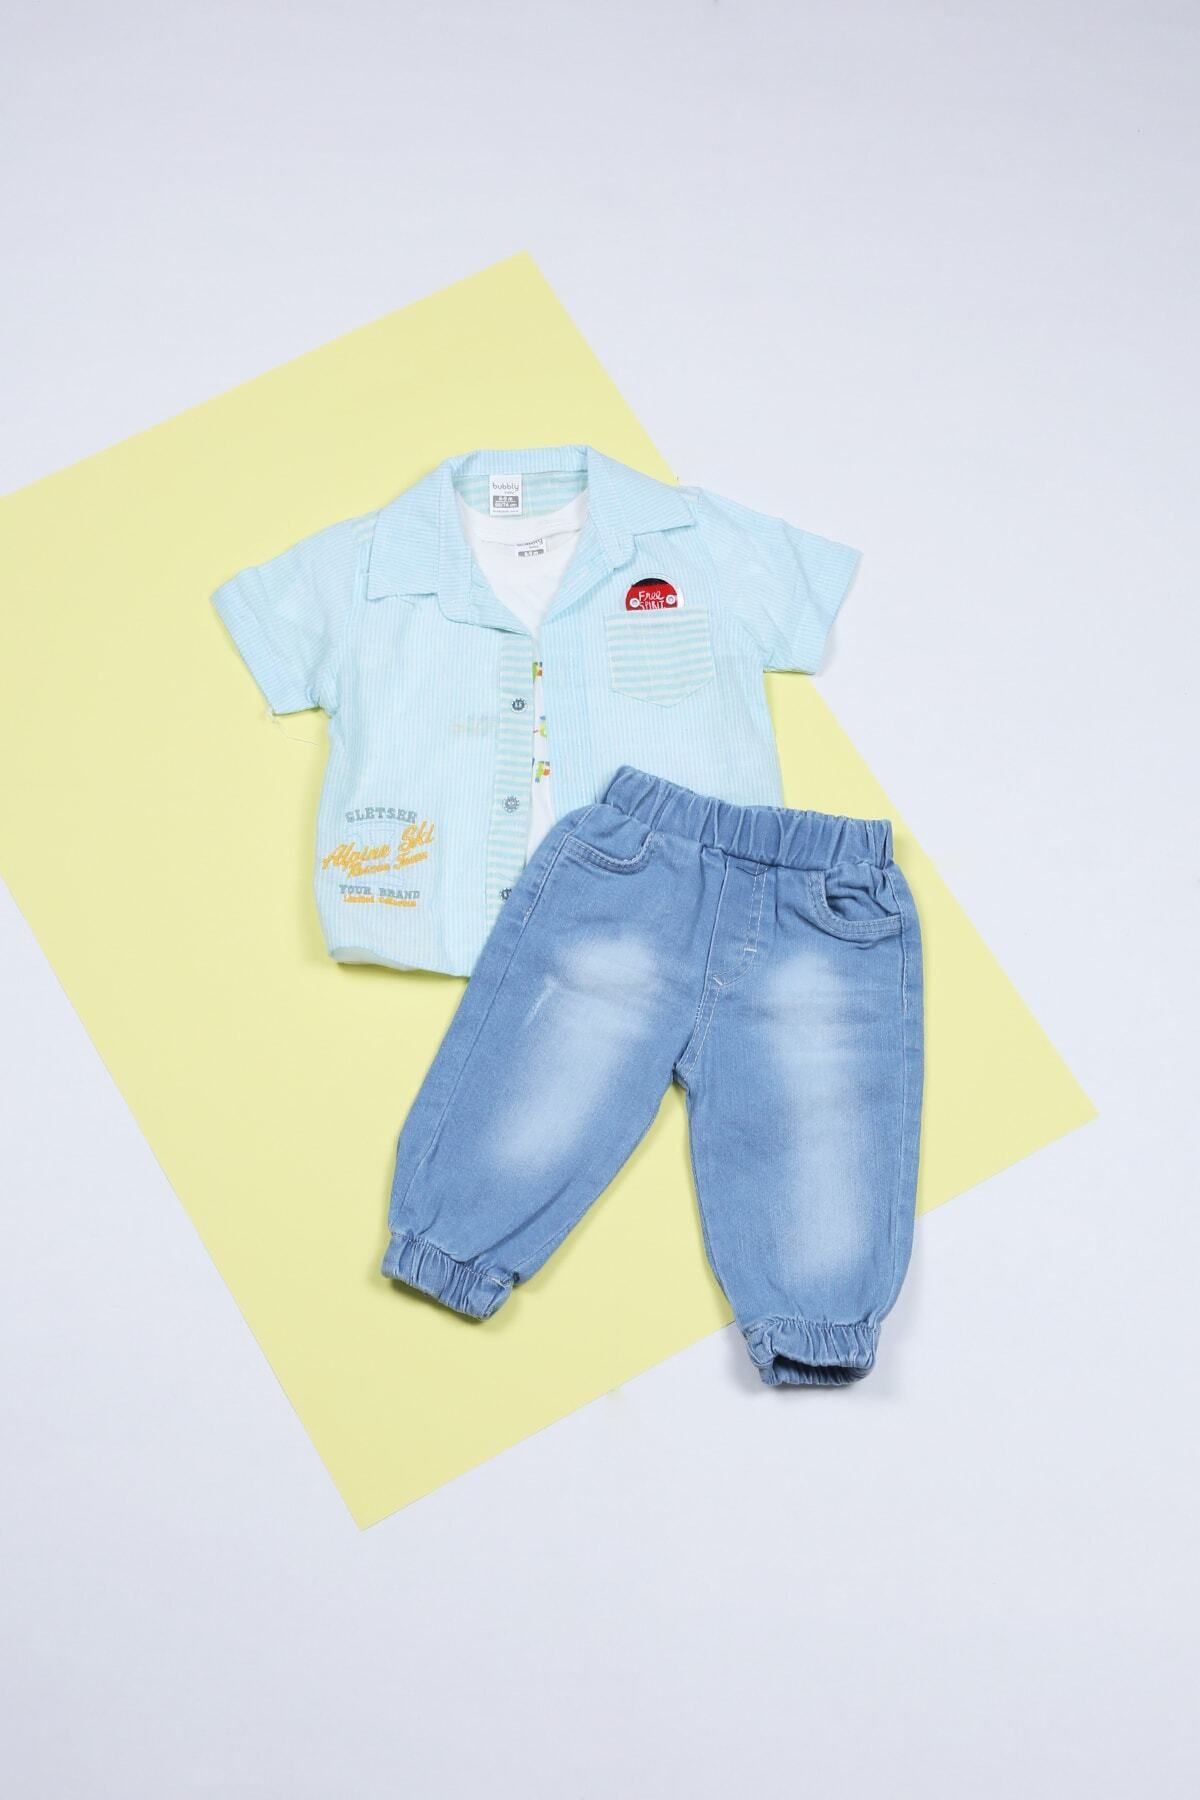 Junico Bebek - Çocuk Gömlekli Takım